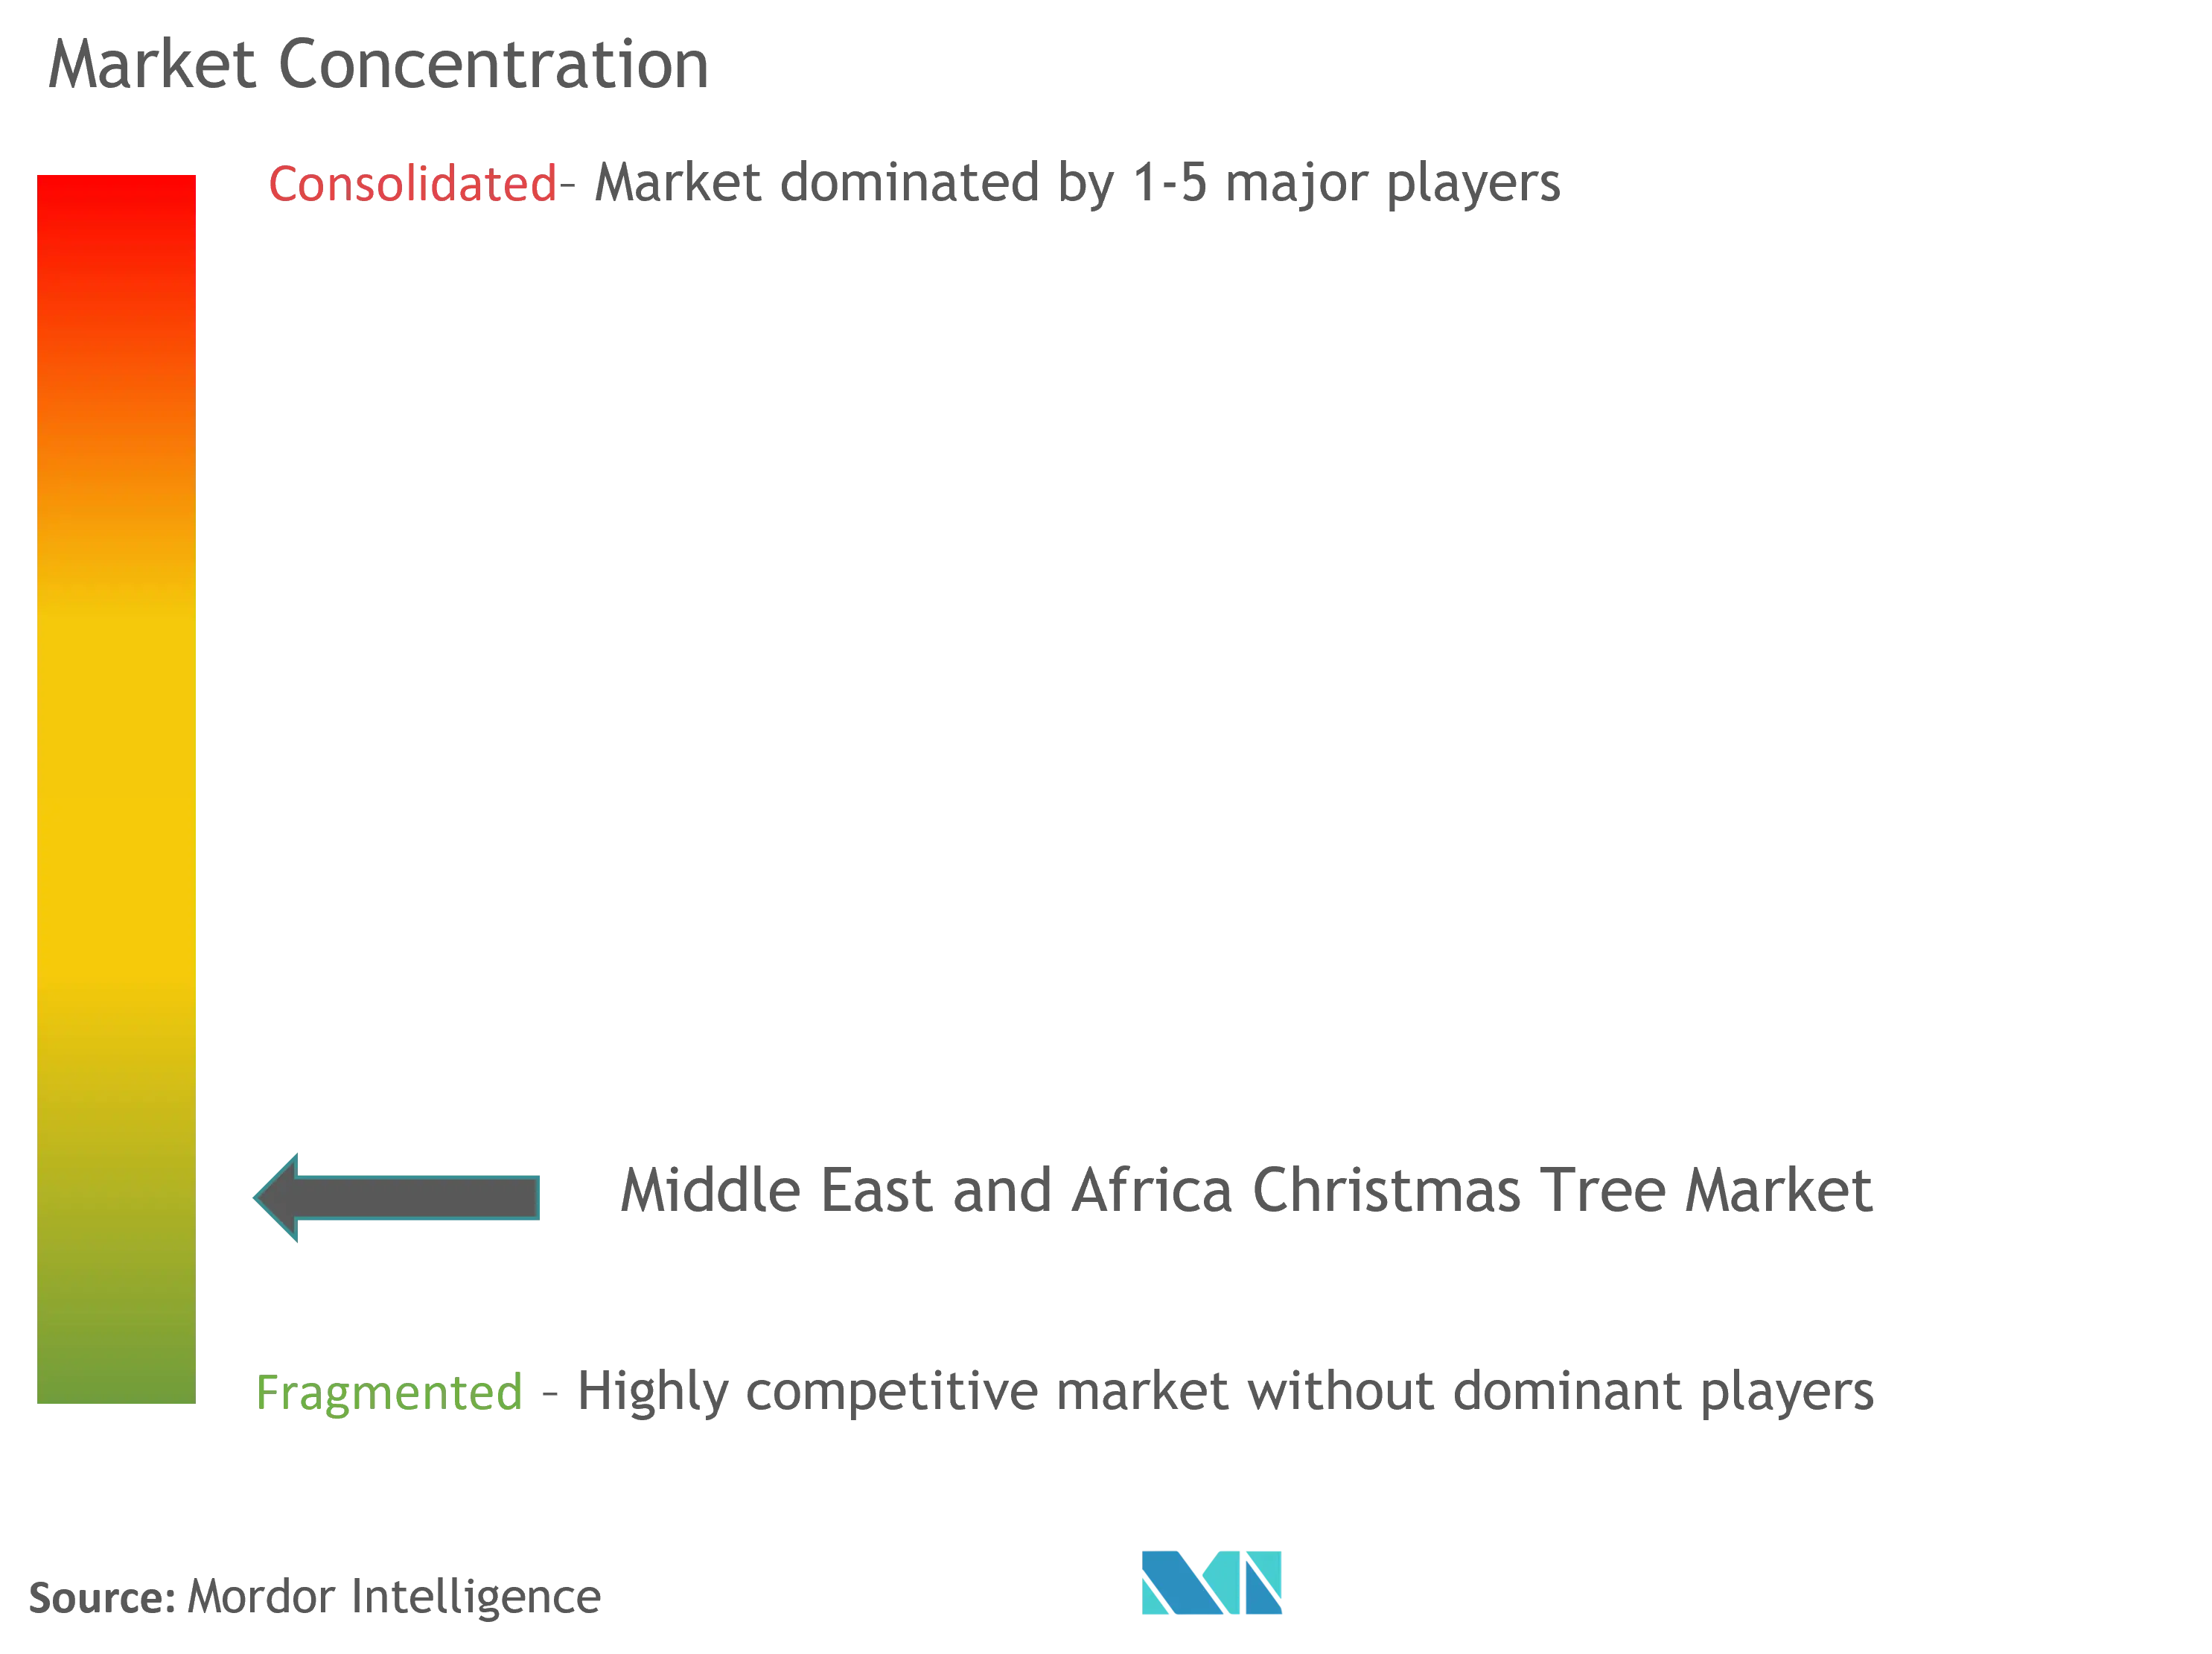 中東とアフリカのクリスマスツリー市場集中度